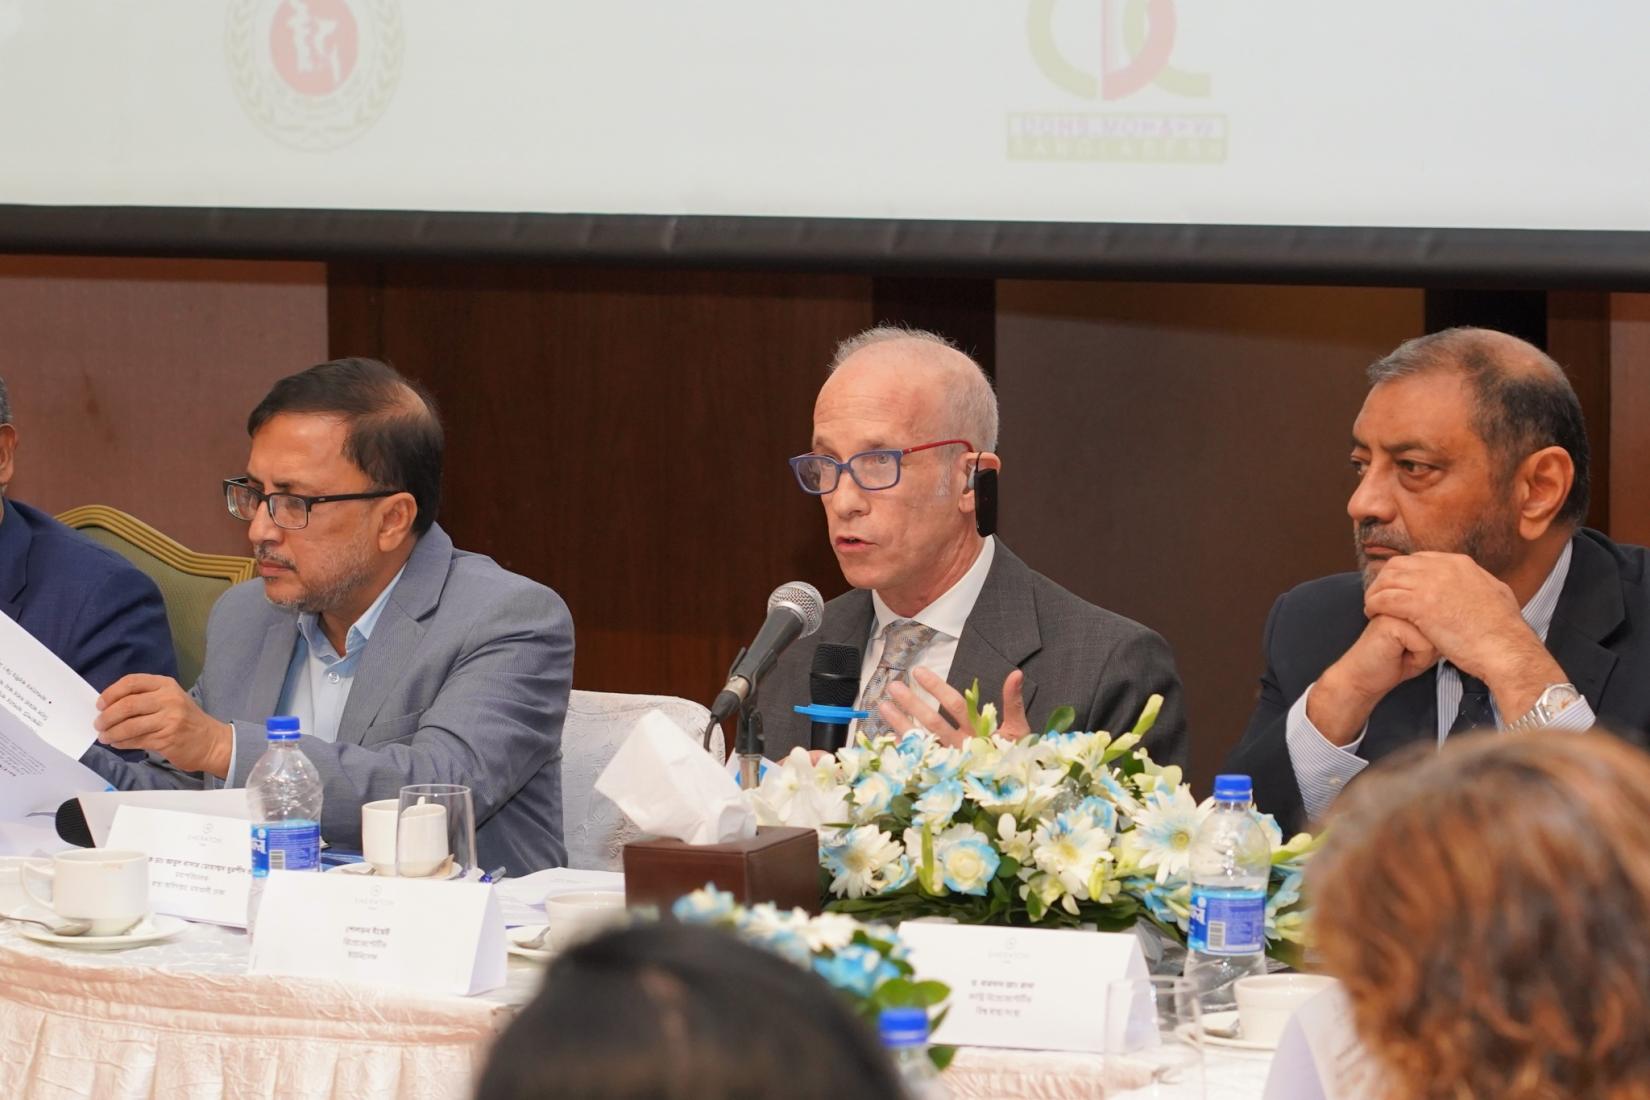 Sheldon Yett, UNICEF Representative to Bangladesh presenting his remarks at the roundtable, accompanied by Dr Bardan Jung Rana, WHO Representative to Bangladesh